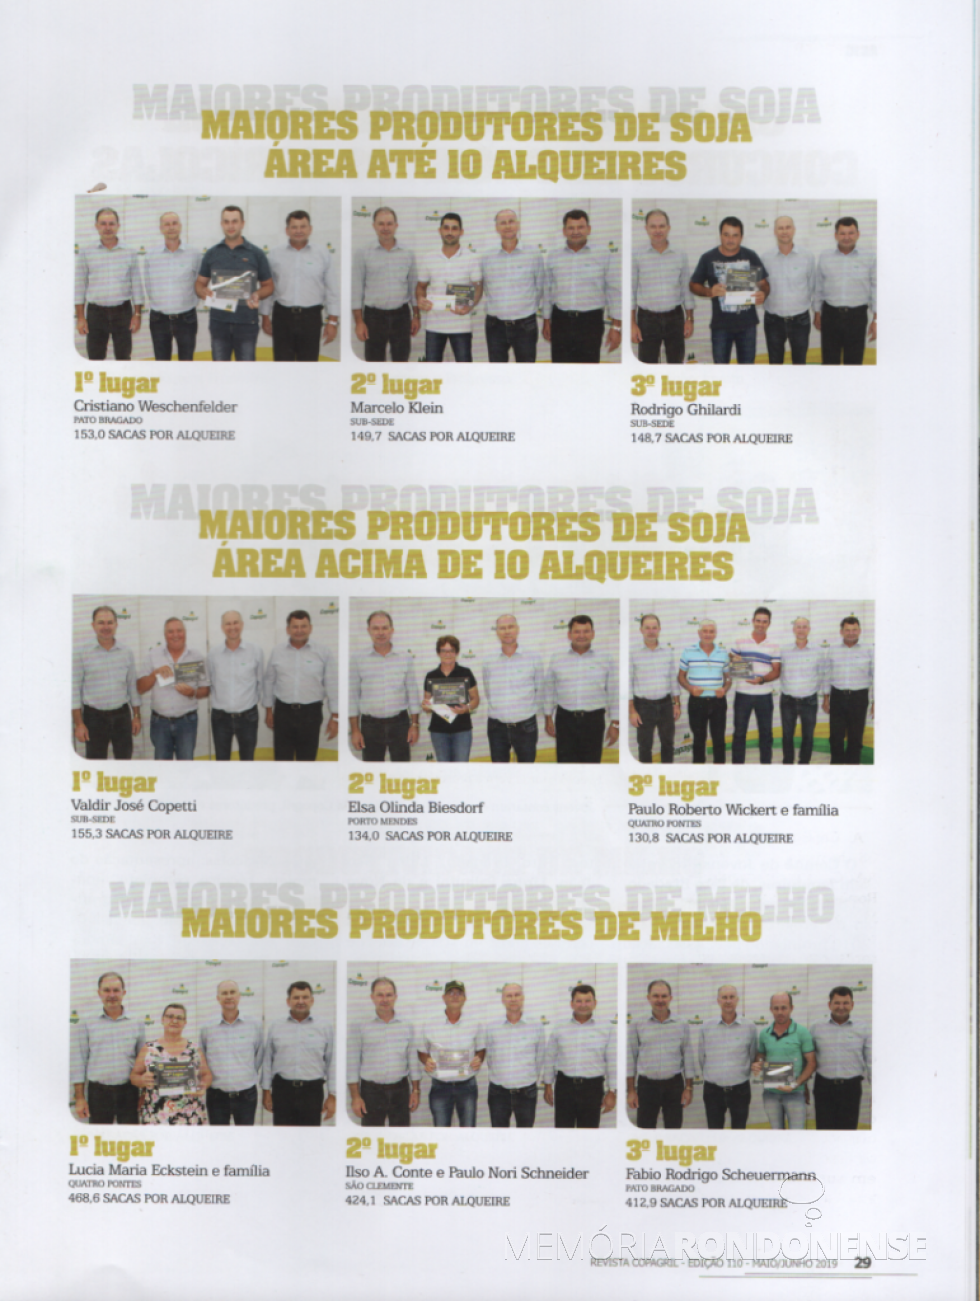 Premiação dos produtores que alcançaram a melhor produtividade de soja e milho, respectivamente, nas categorias envolvidas, na safra 2018/2019.
ImageM; Revista Copagril nº 110 - FOTO 18 --